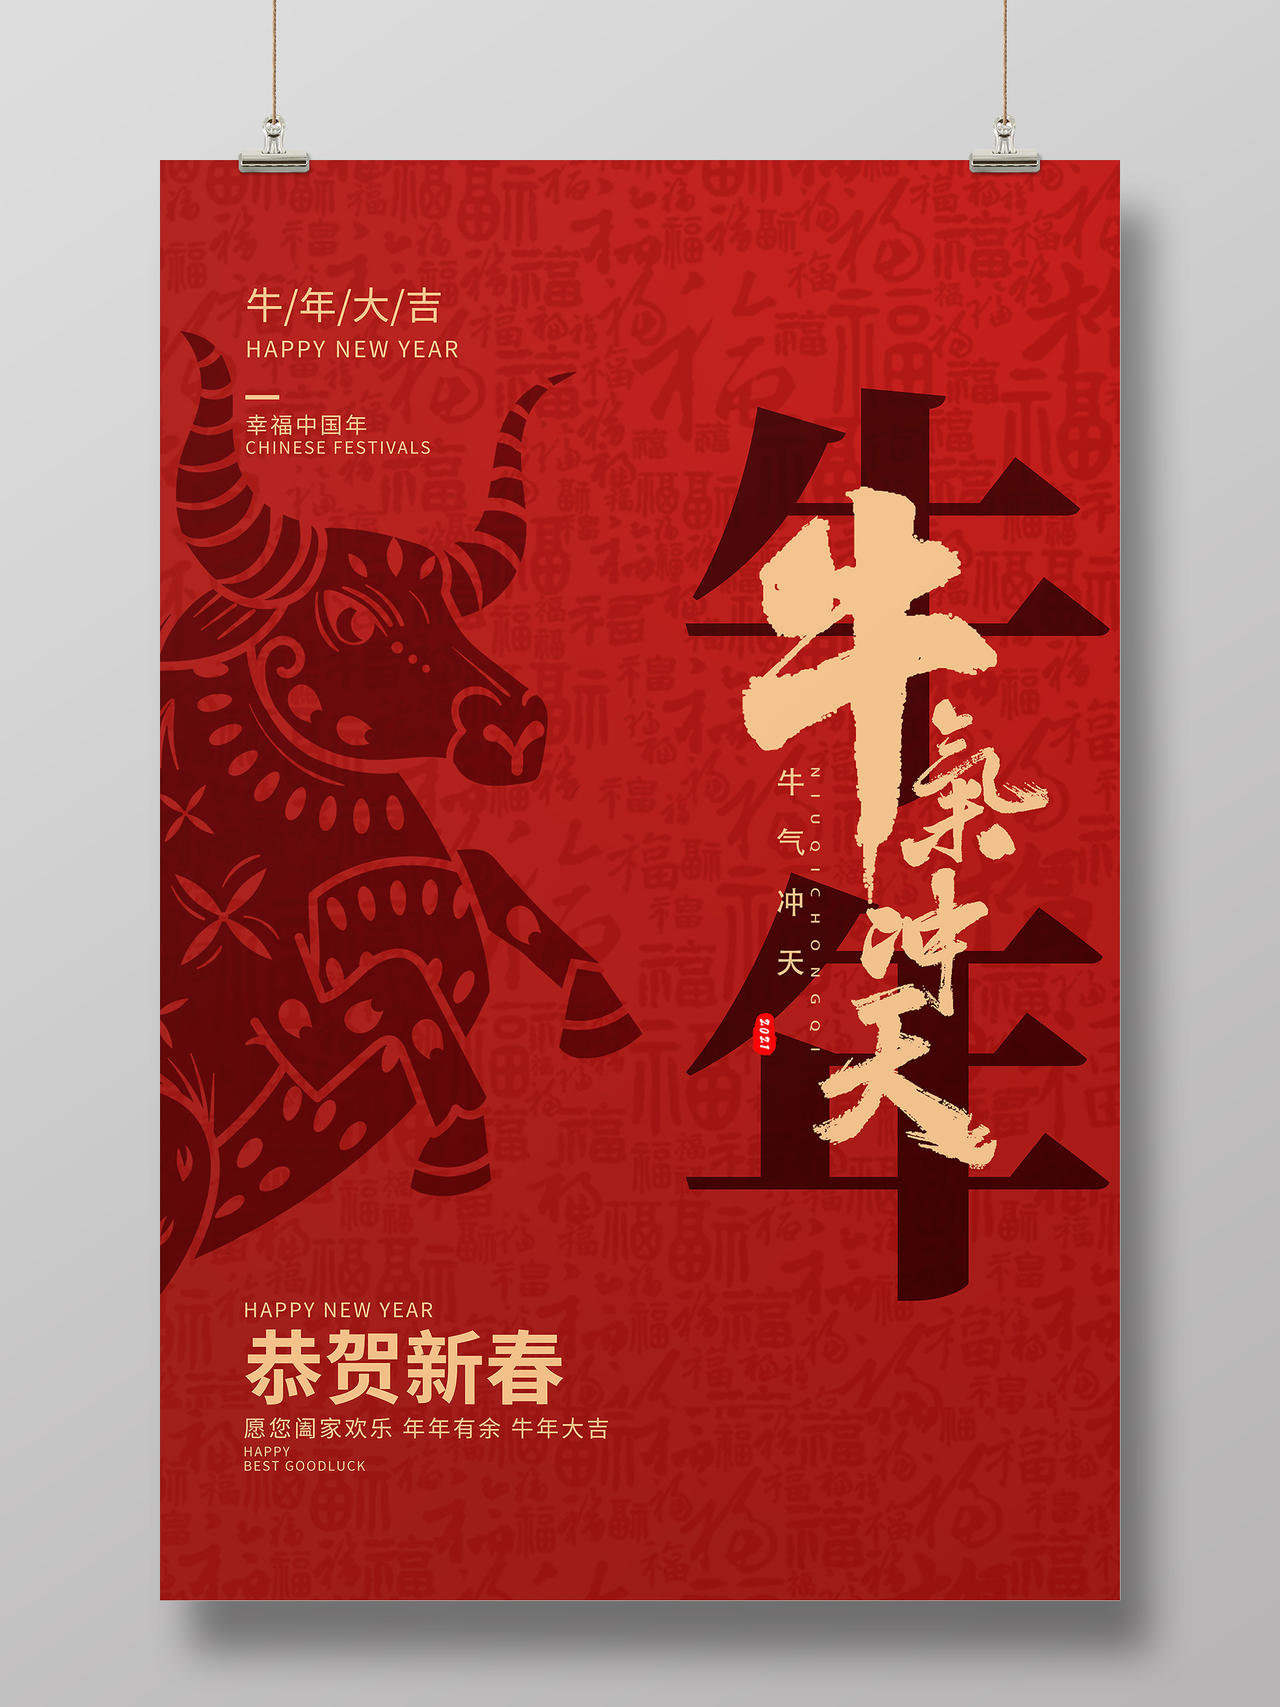 红色中国风牛气冲天2021牛年新年春节节日海报